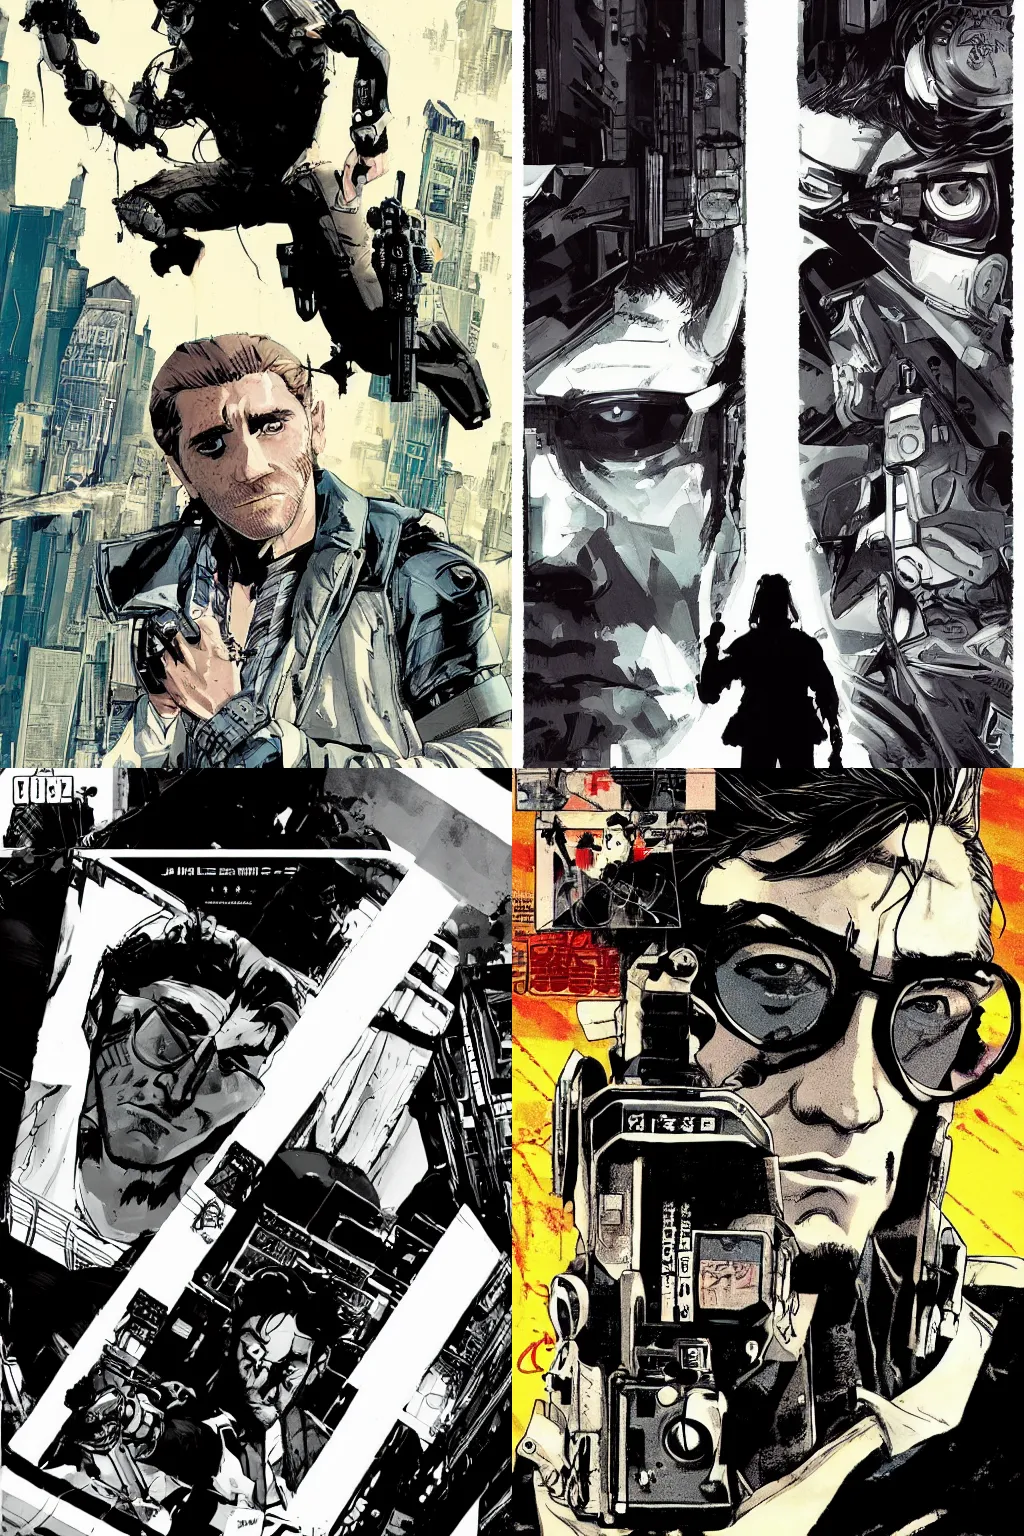 Prompt: jake gyllenhaal graphic novel cover art, yoji shinakawa, studio gainax, cyberpunk, badass